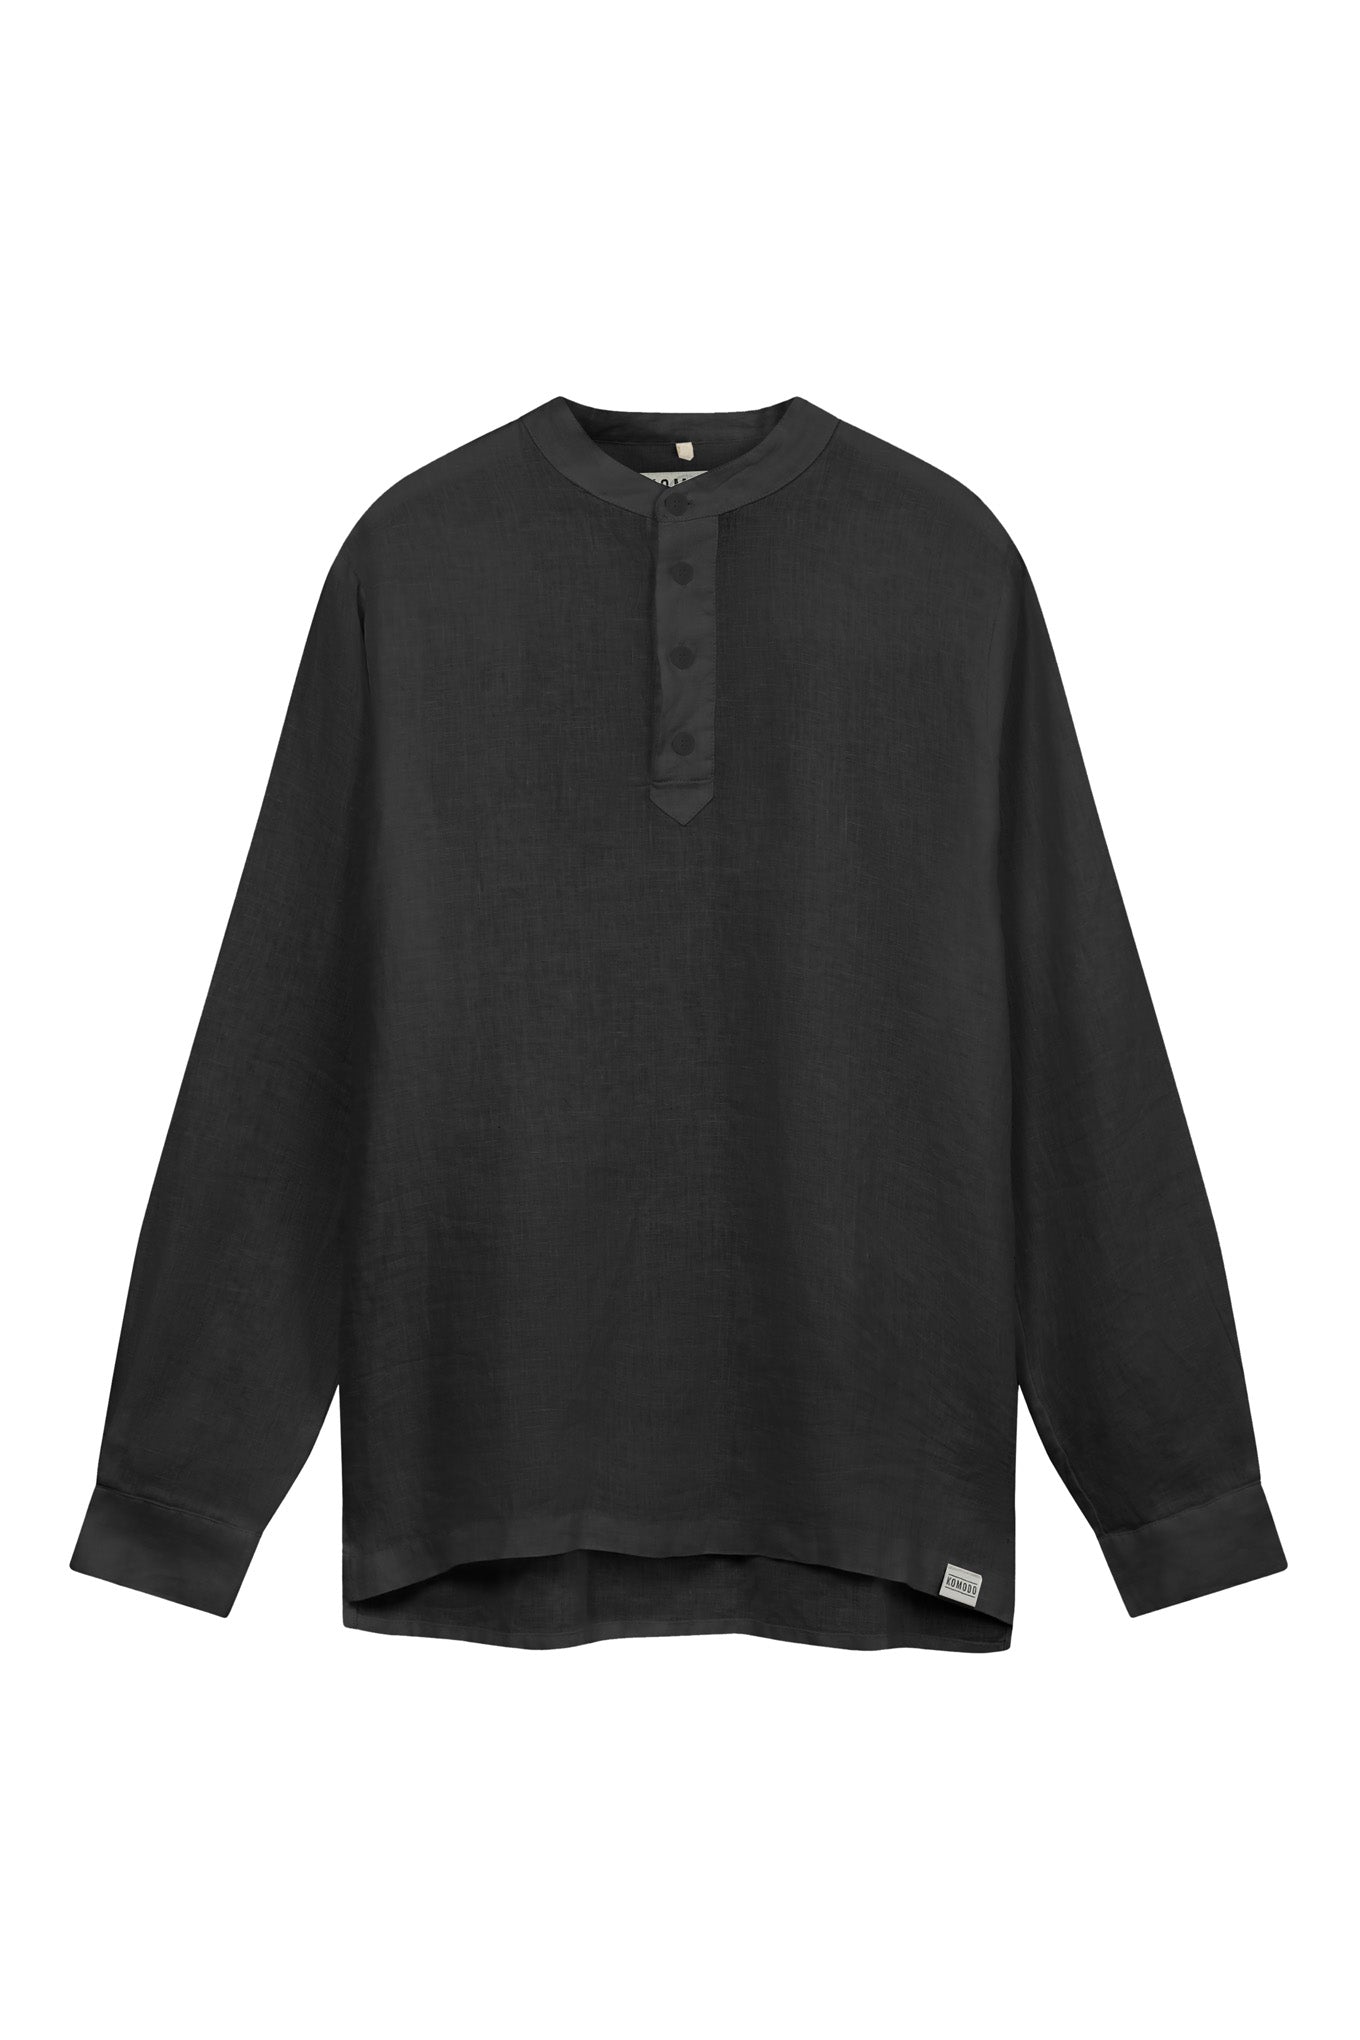 Schwarzes, langärmliges Shirt JULIAN aus Bio-Leinen von Komodo